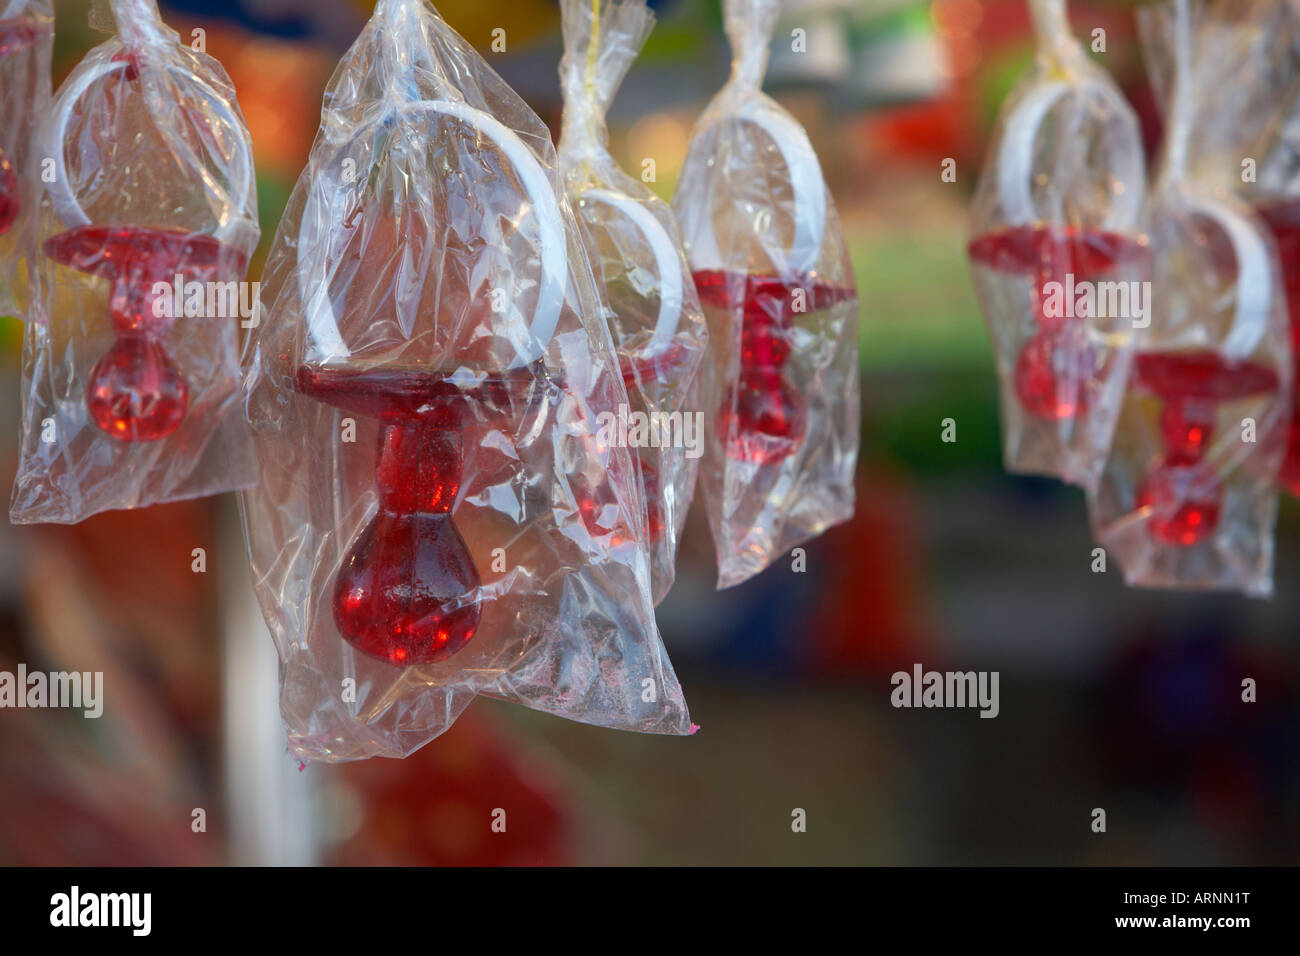 Süßigkeiten Süßwaren Dummys hängen an einem Stand auf einem Messegelände während der Karneval in Santa Cruz-Teneriffa-Kanarische Inseln-Spanien Stockfoto